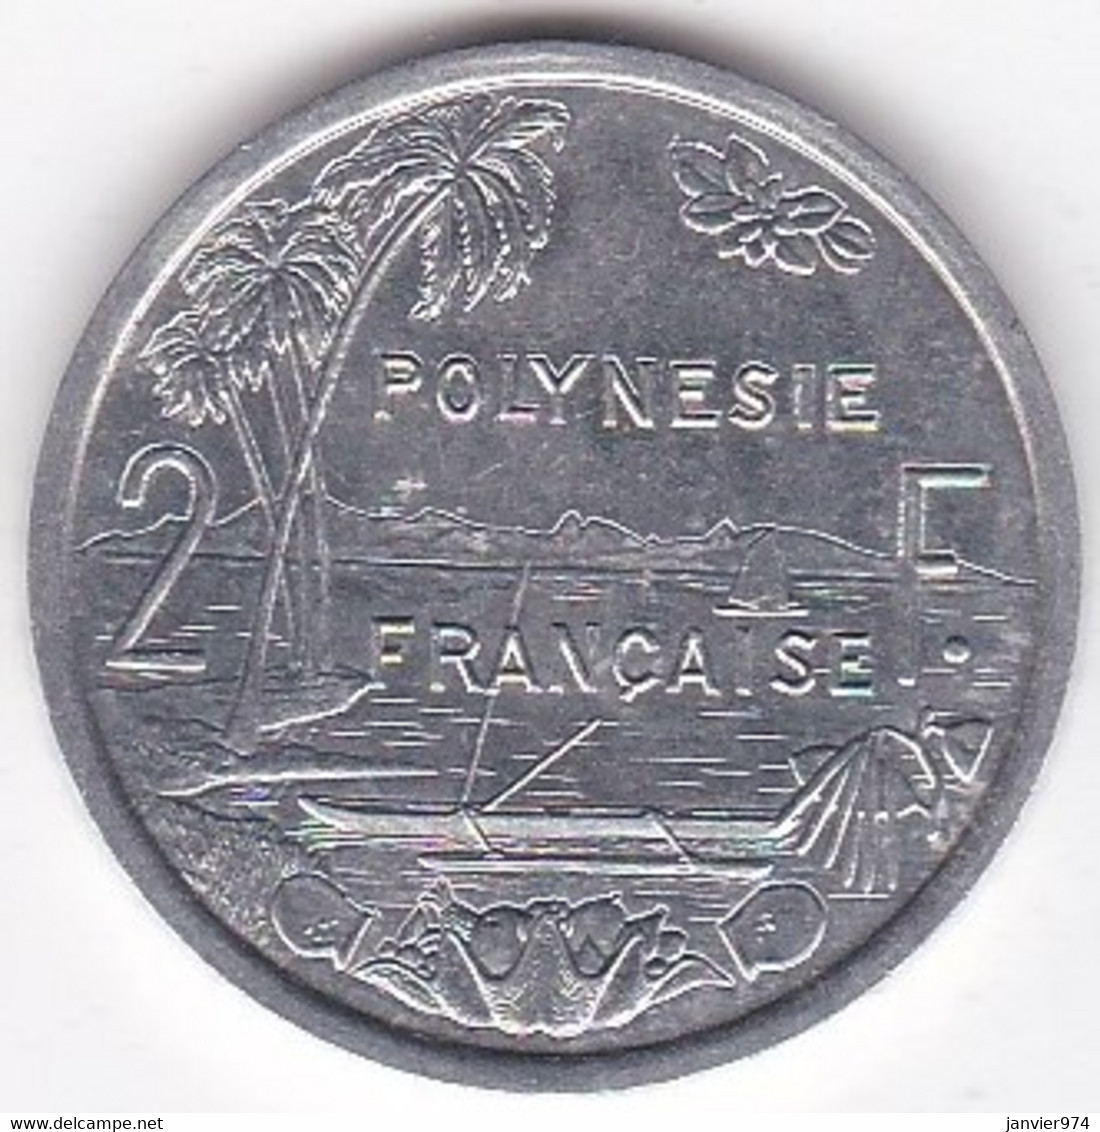 Polynésie Française . 2 Francs 2000, En Aluminium - Frans-Polynesië